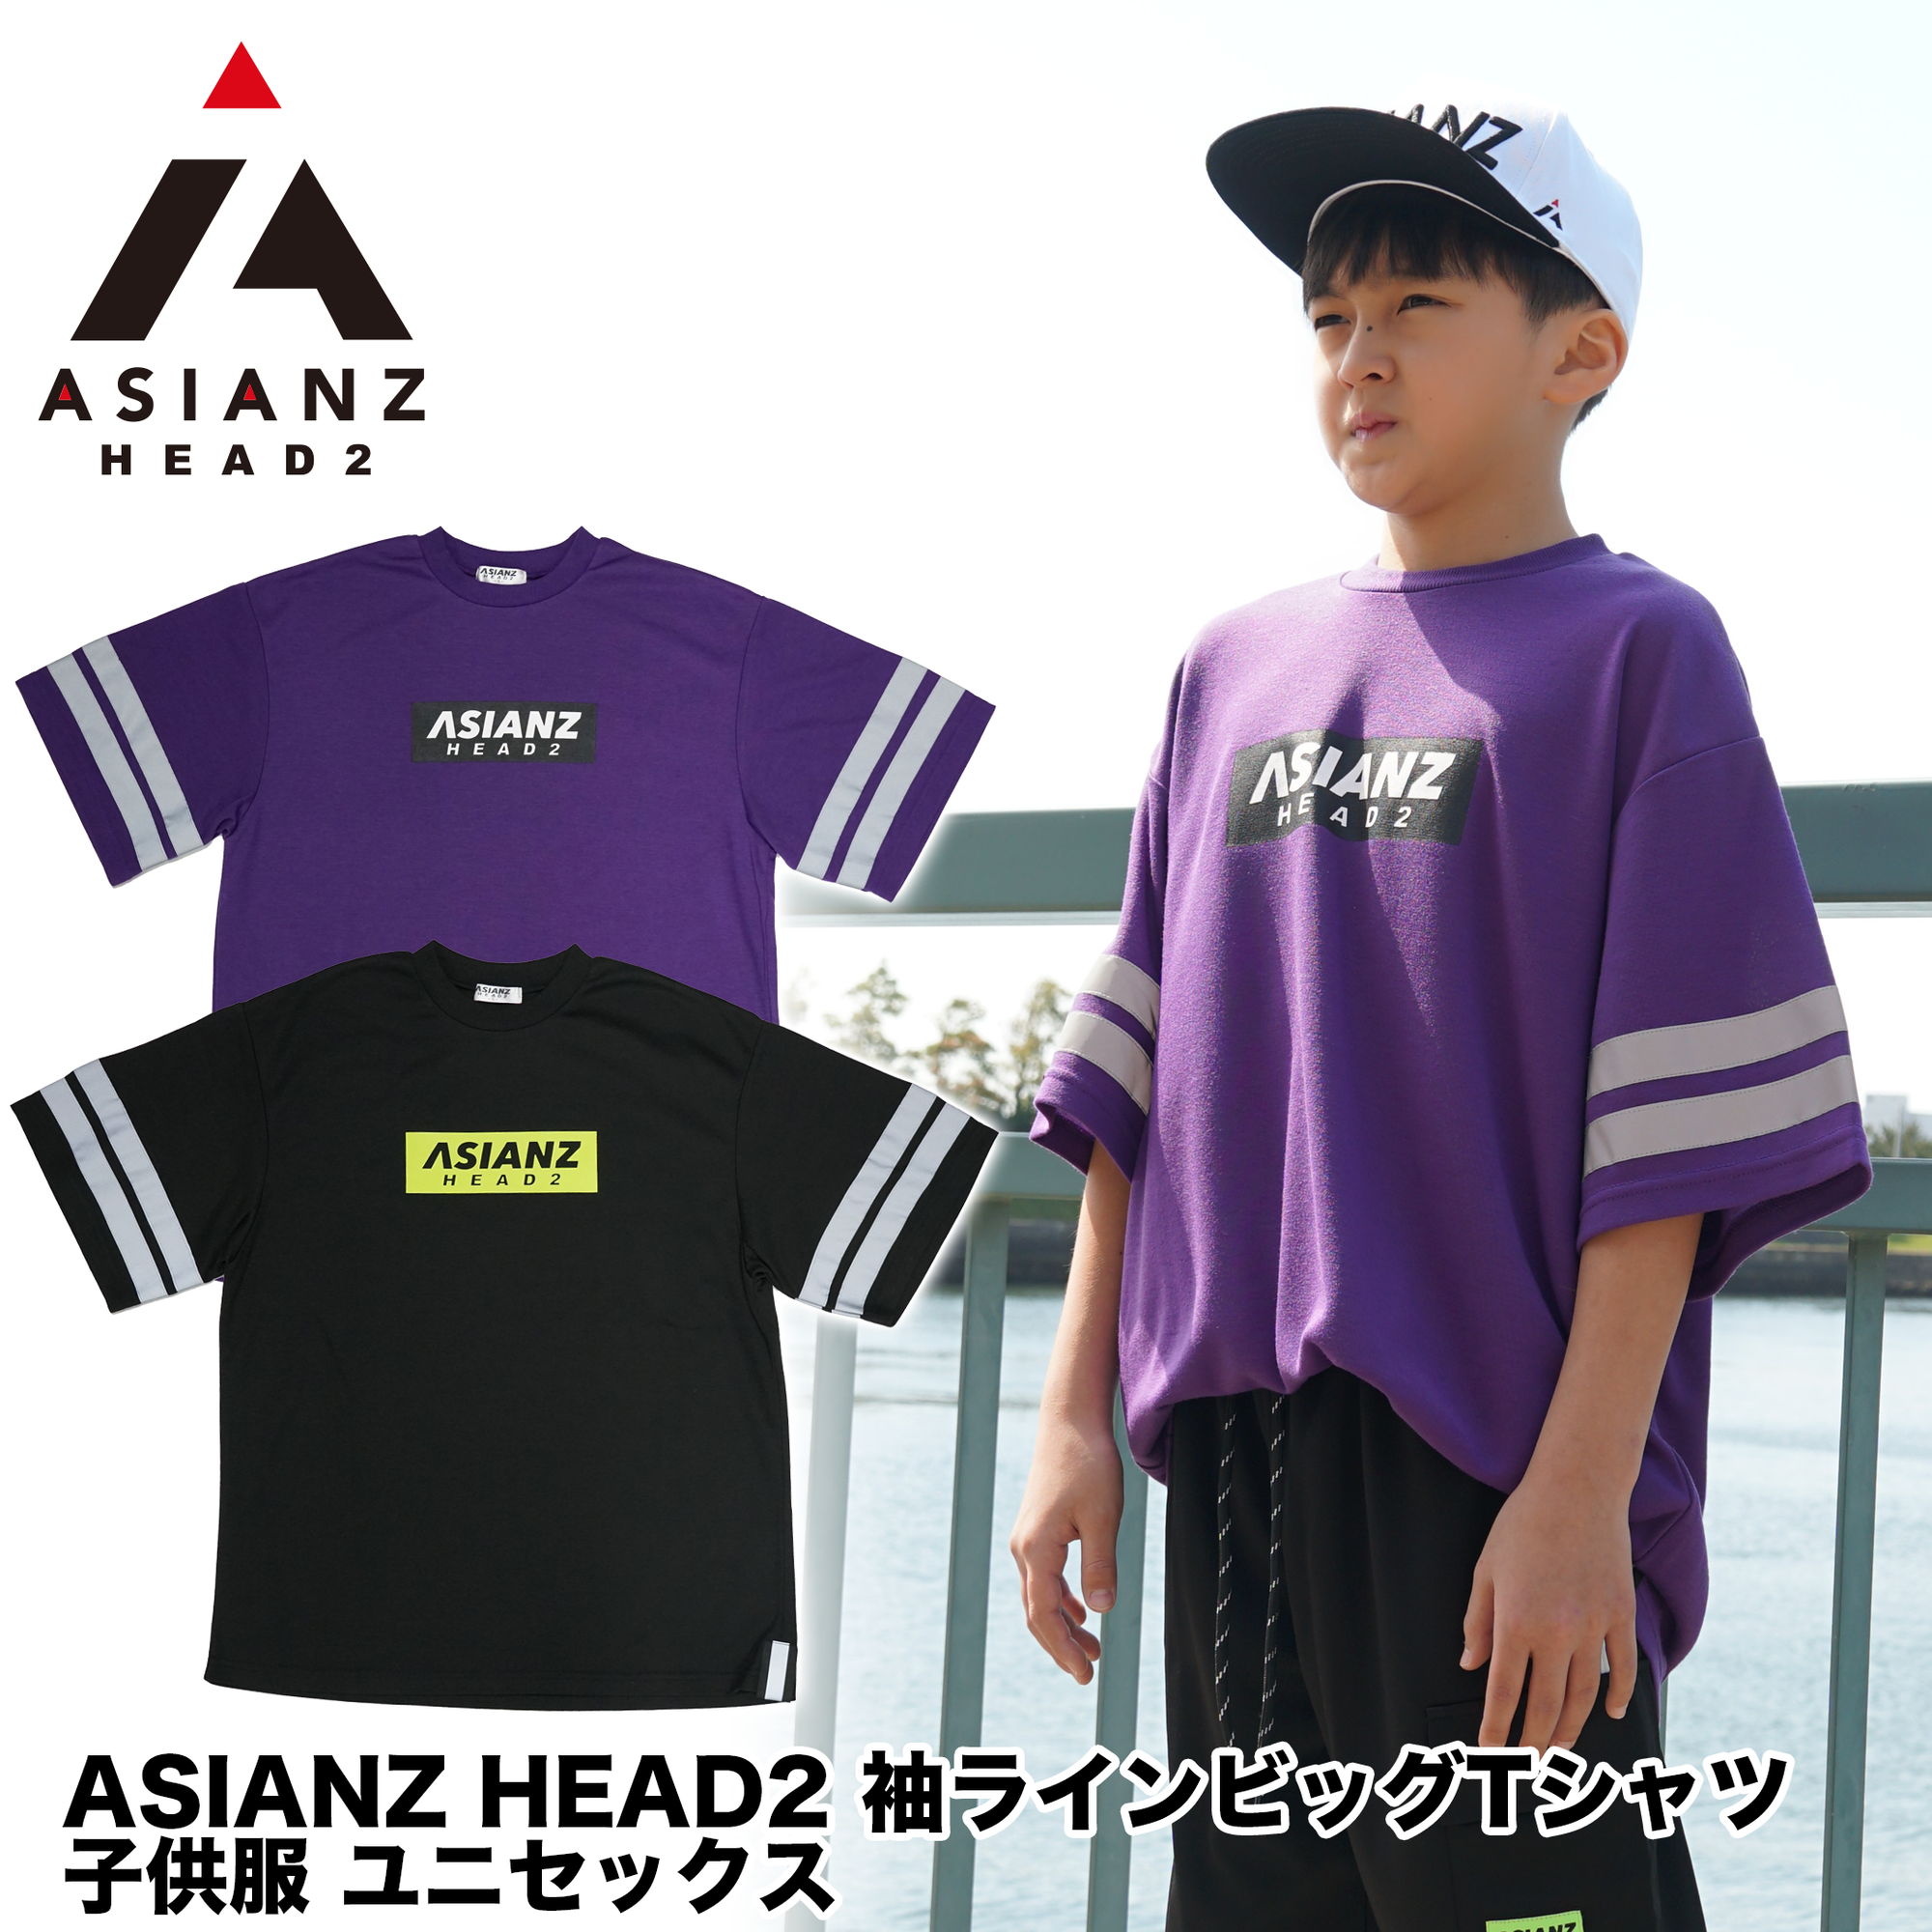 (40%オフ! セール商品)  ASIANZ HEAD2 袖ラインビッグTシャツ キッズウェアー